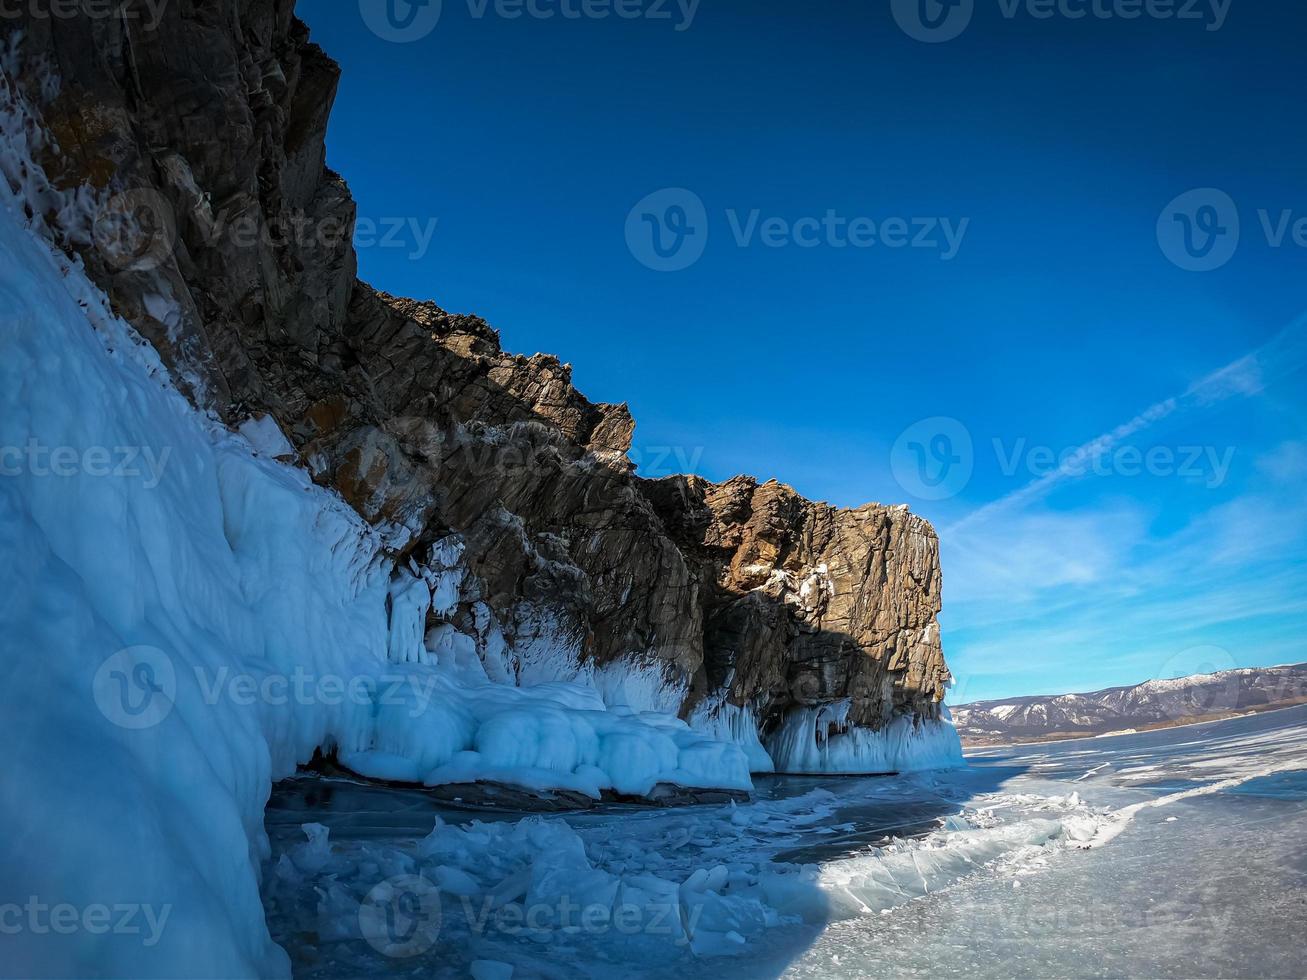 paesaggio di montagna a giorno con naturale rottura ghiaccio nel congelato acqua su lago baikal, Siberia, Russia. foto